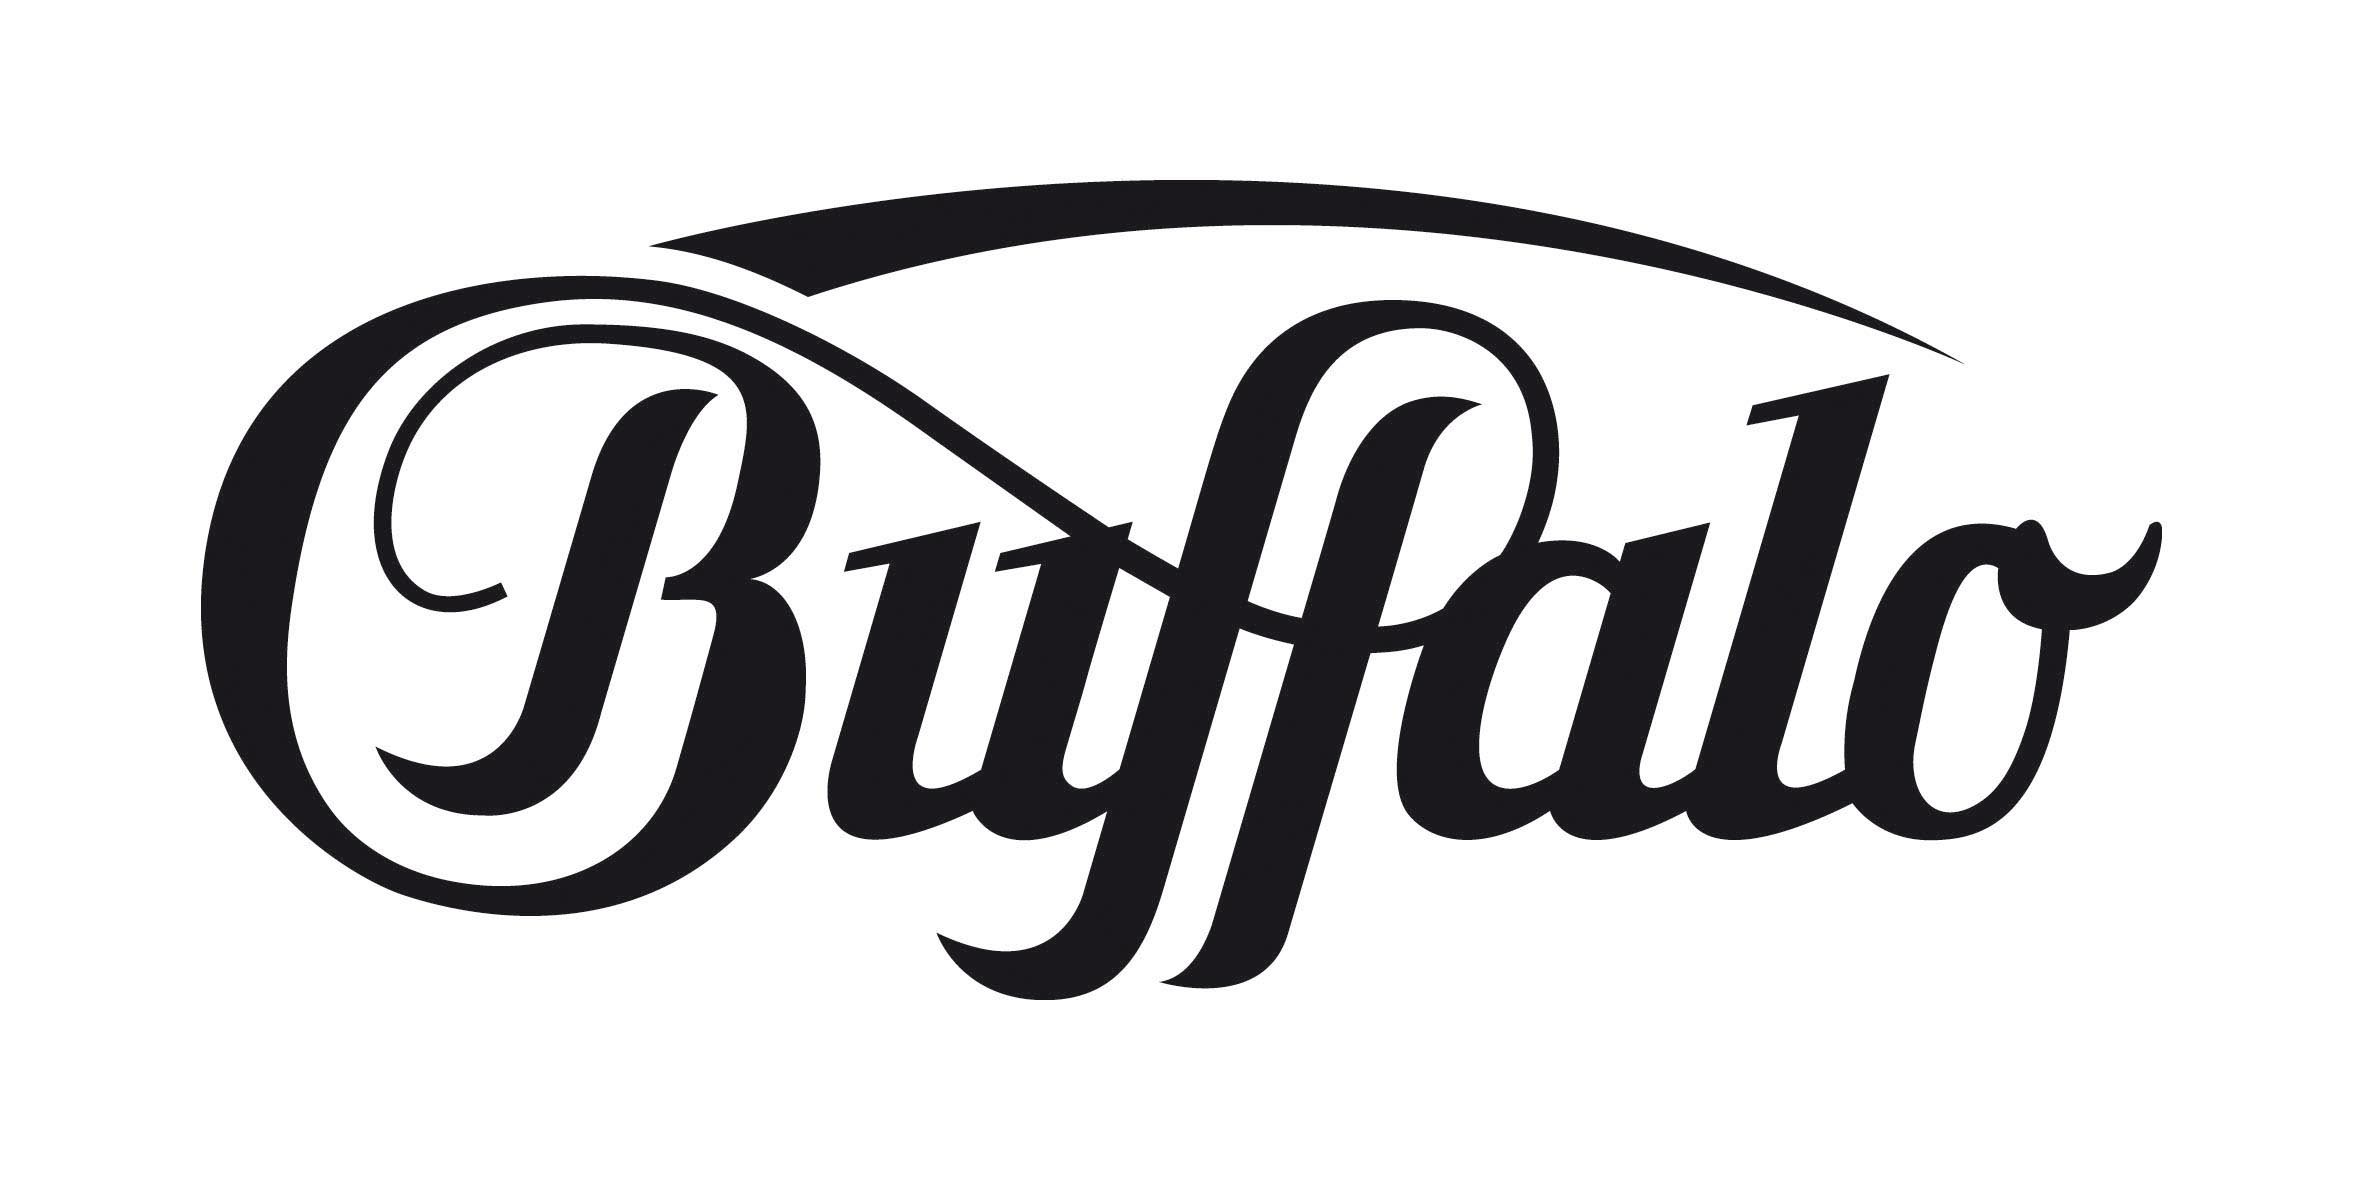 Лейбл компании. Брендовые логотипы. Буффало логотип. Buffalo бренд одежды. Бренд одежды Буффало логотип.